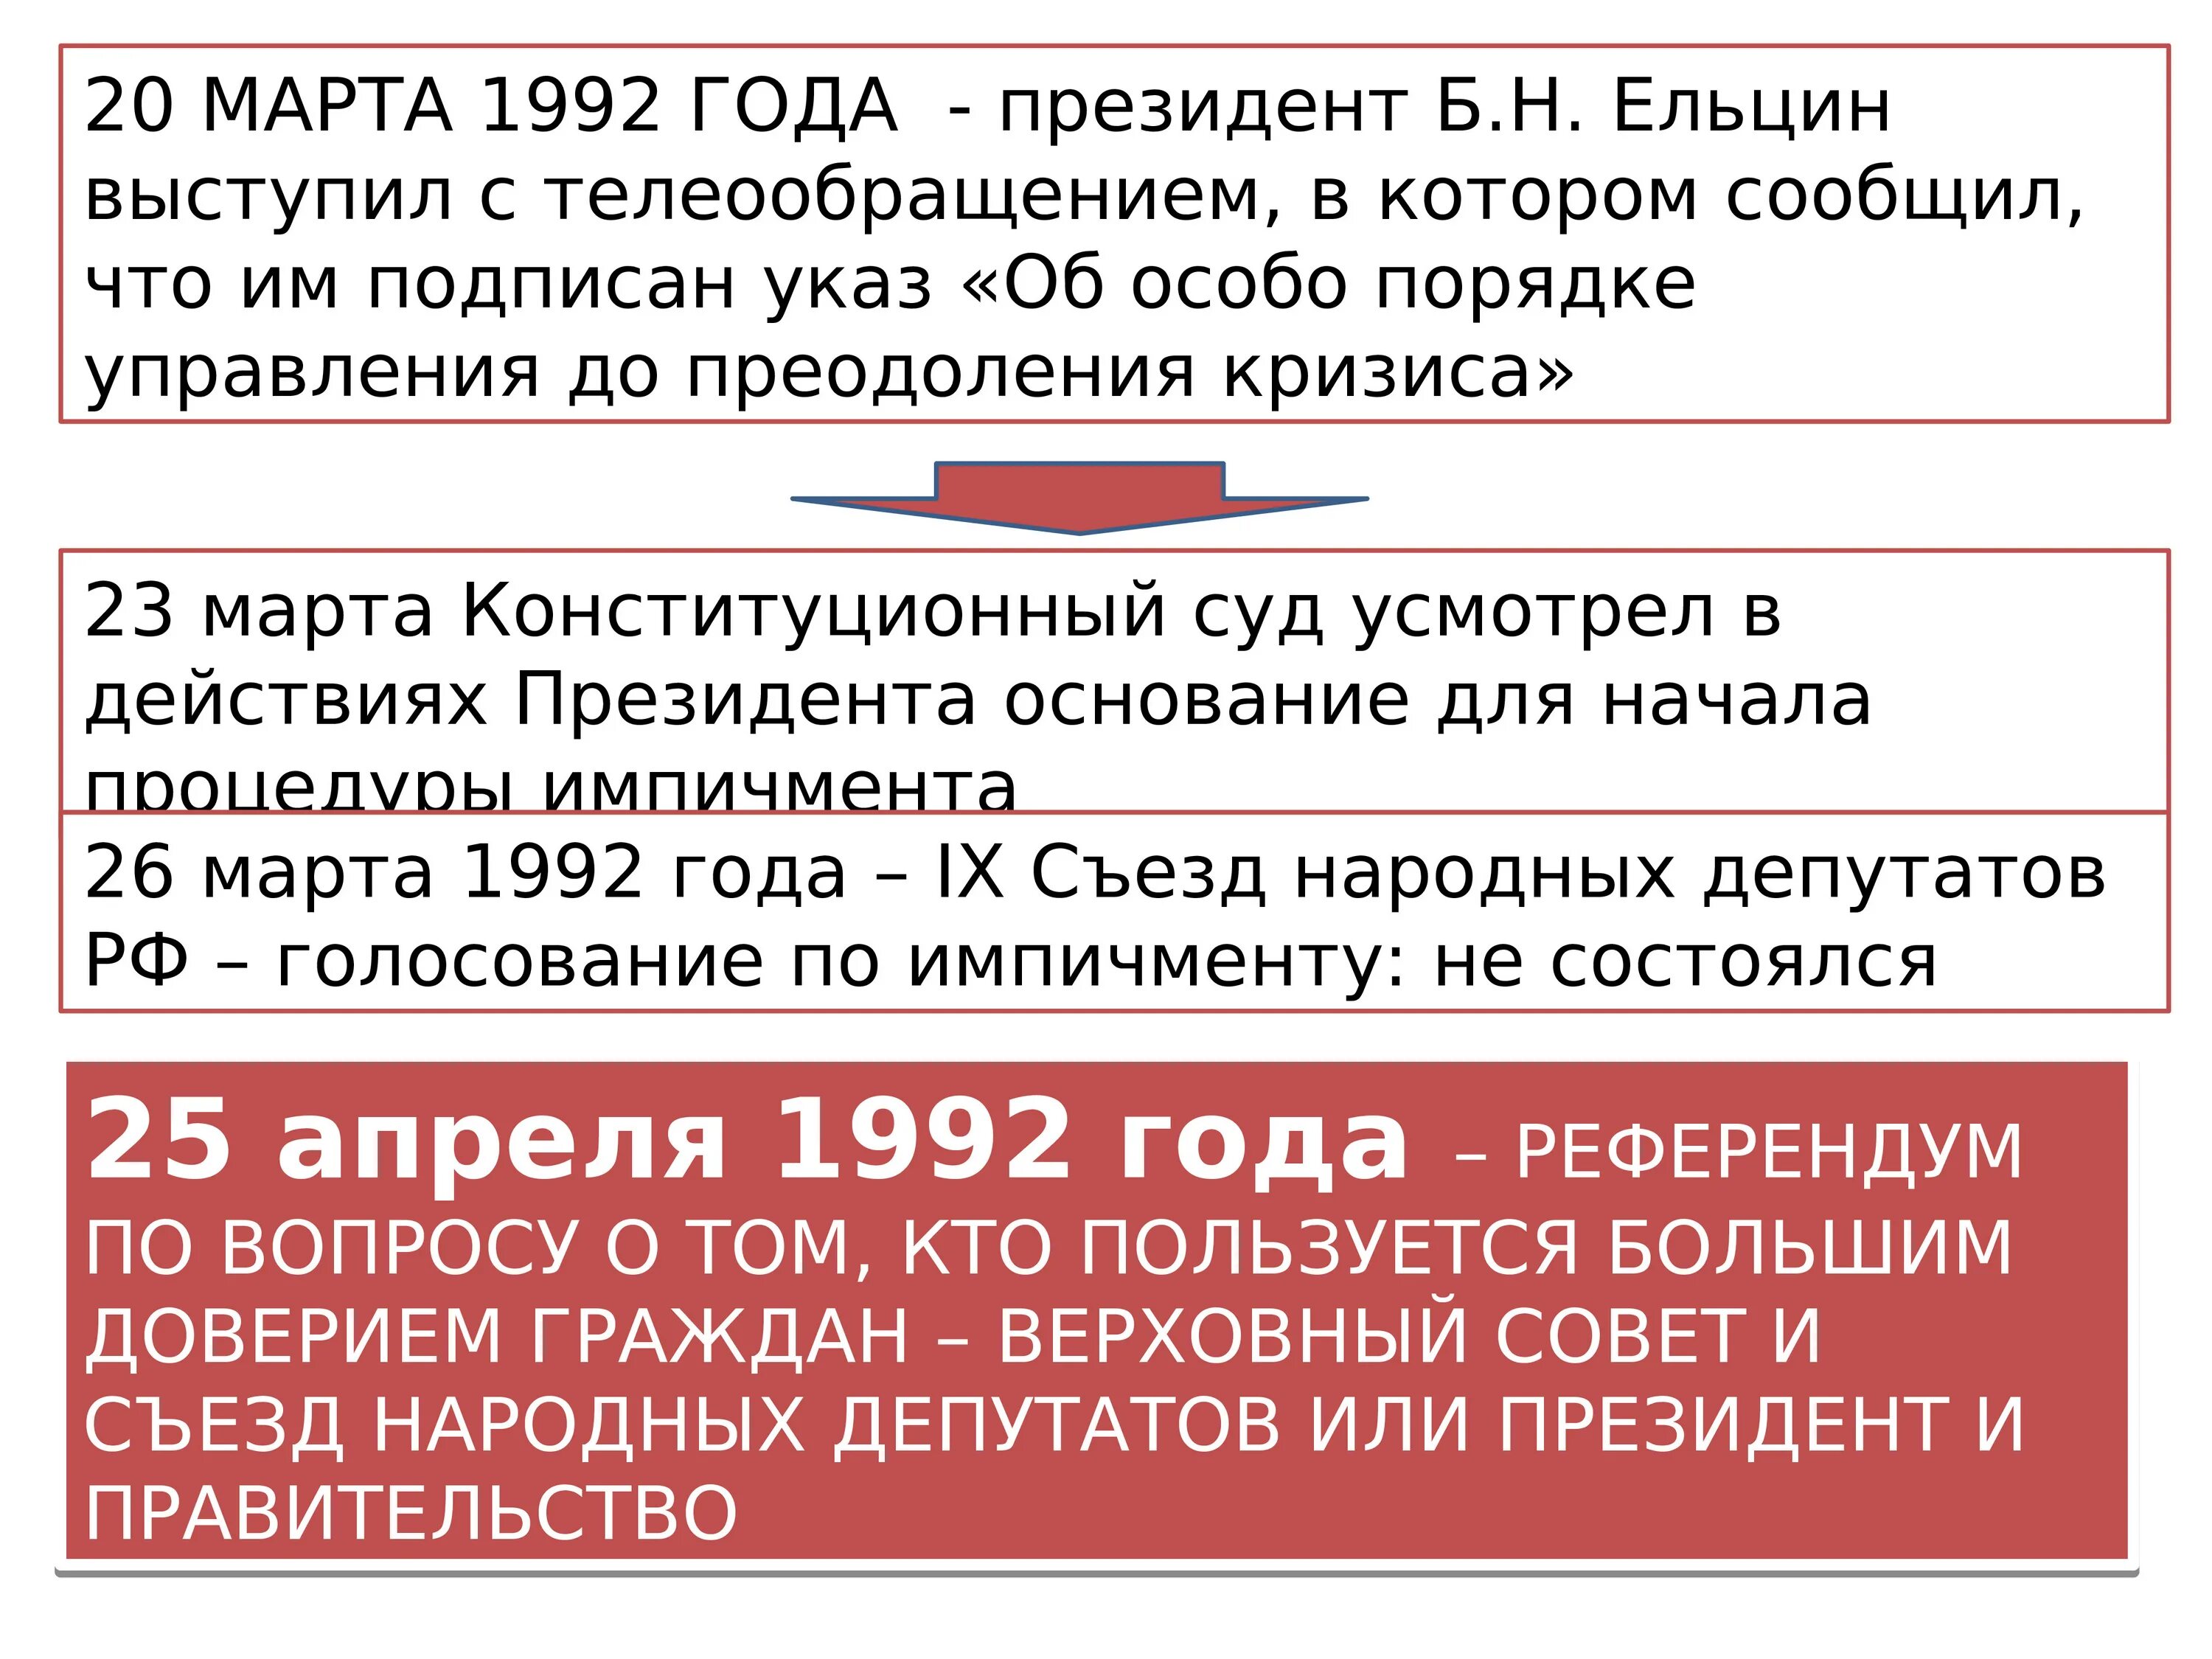 Кризис 1992. Попытка импичмента Ельцина 1993. Политический кризис в Росси в 1993 году. Кризис 1992 года. Импичмент Ельцину причины.